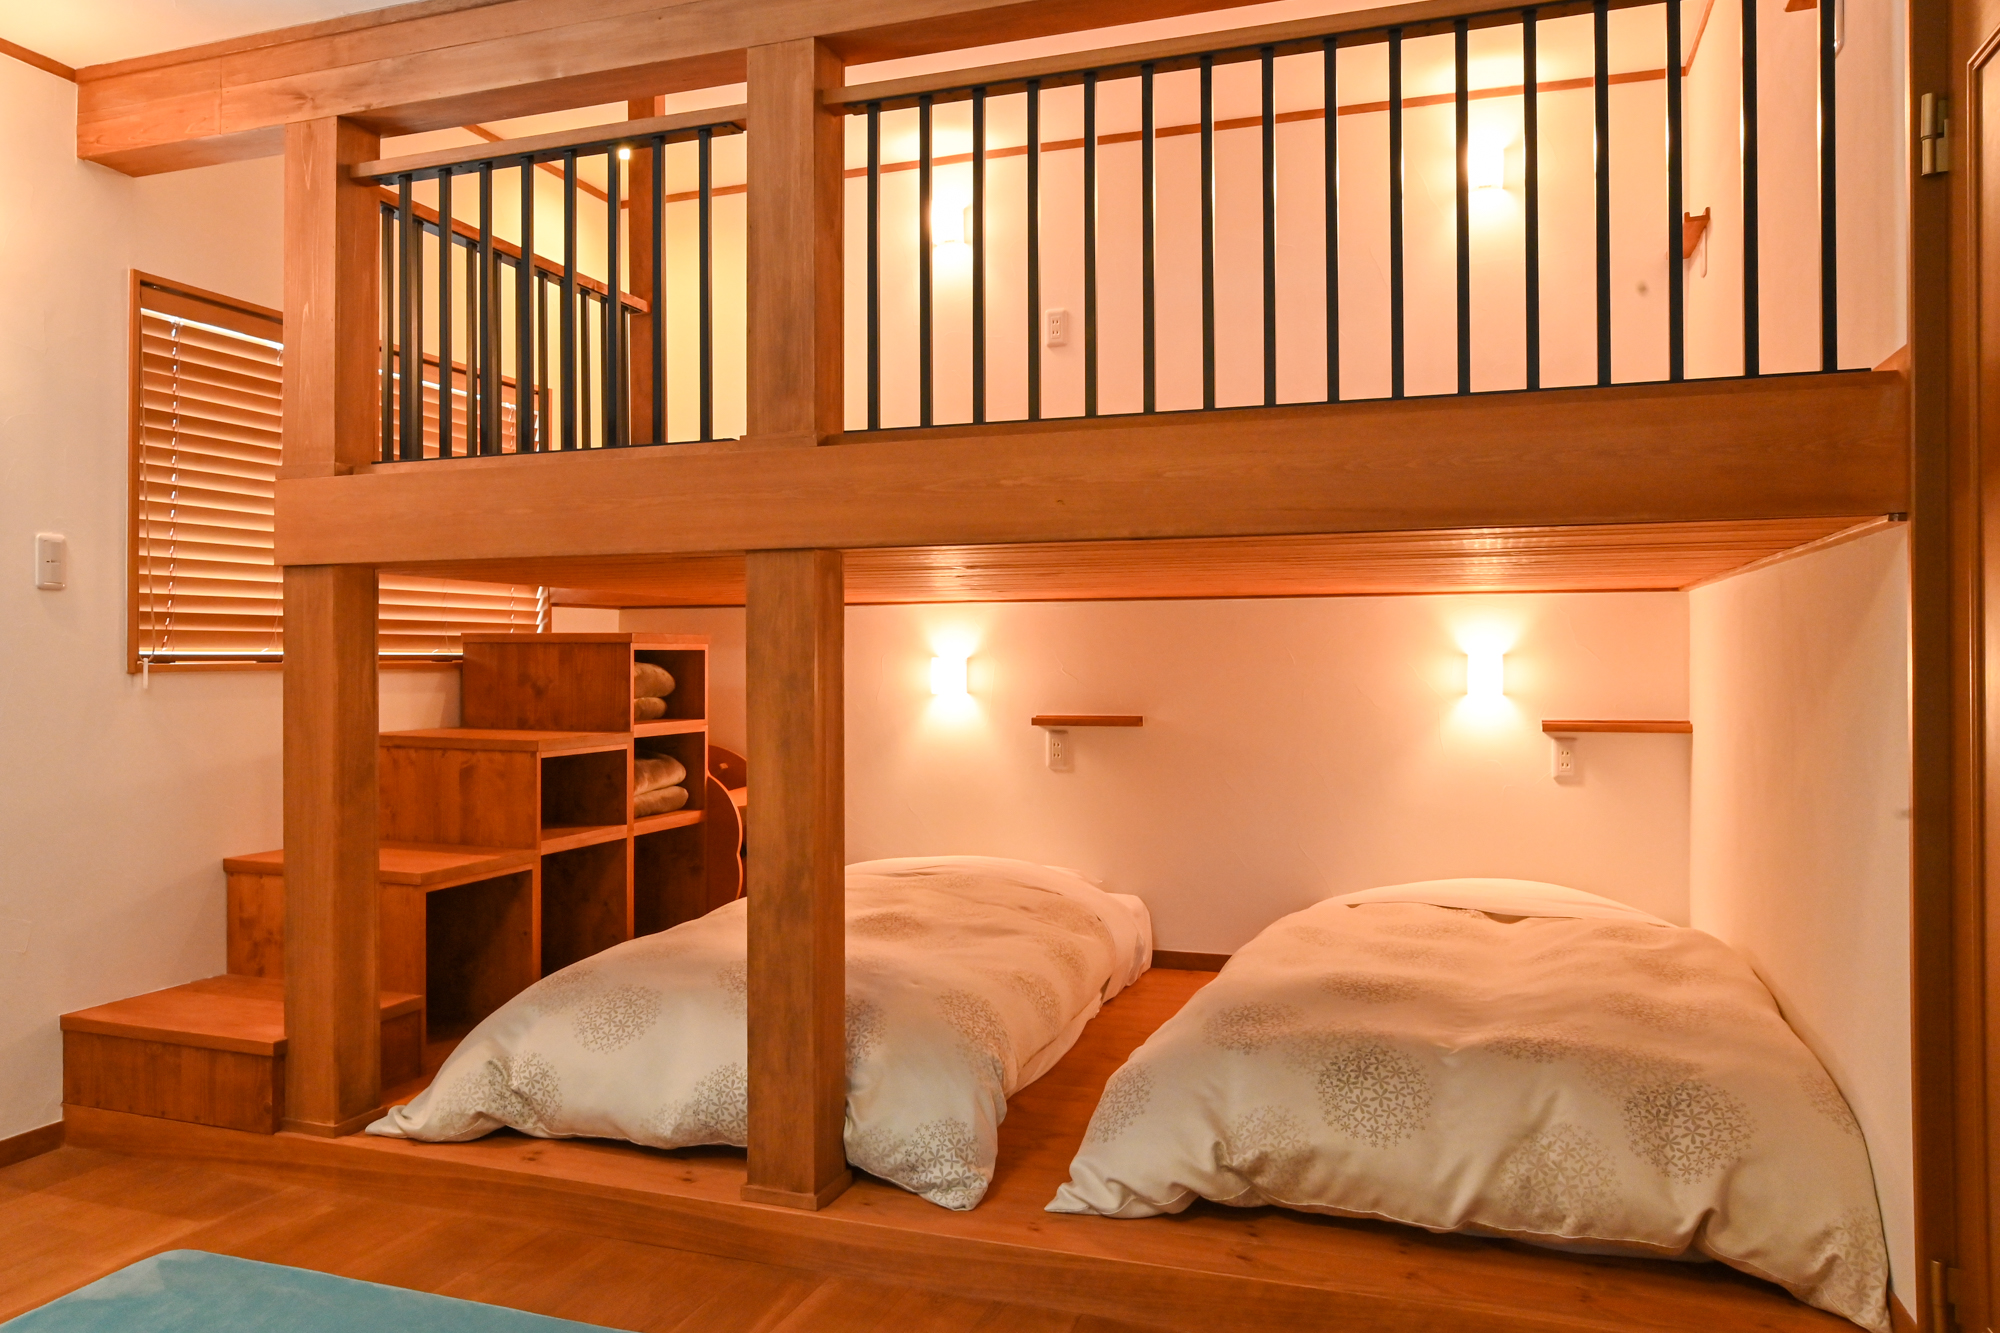 1段目にはシングルサイズのベッドが2台、ロフトの2段目には布団が2客敷ける
